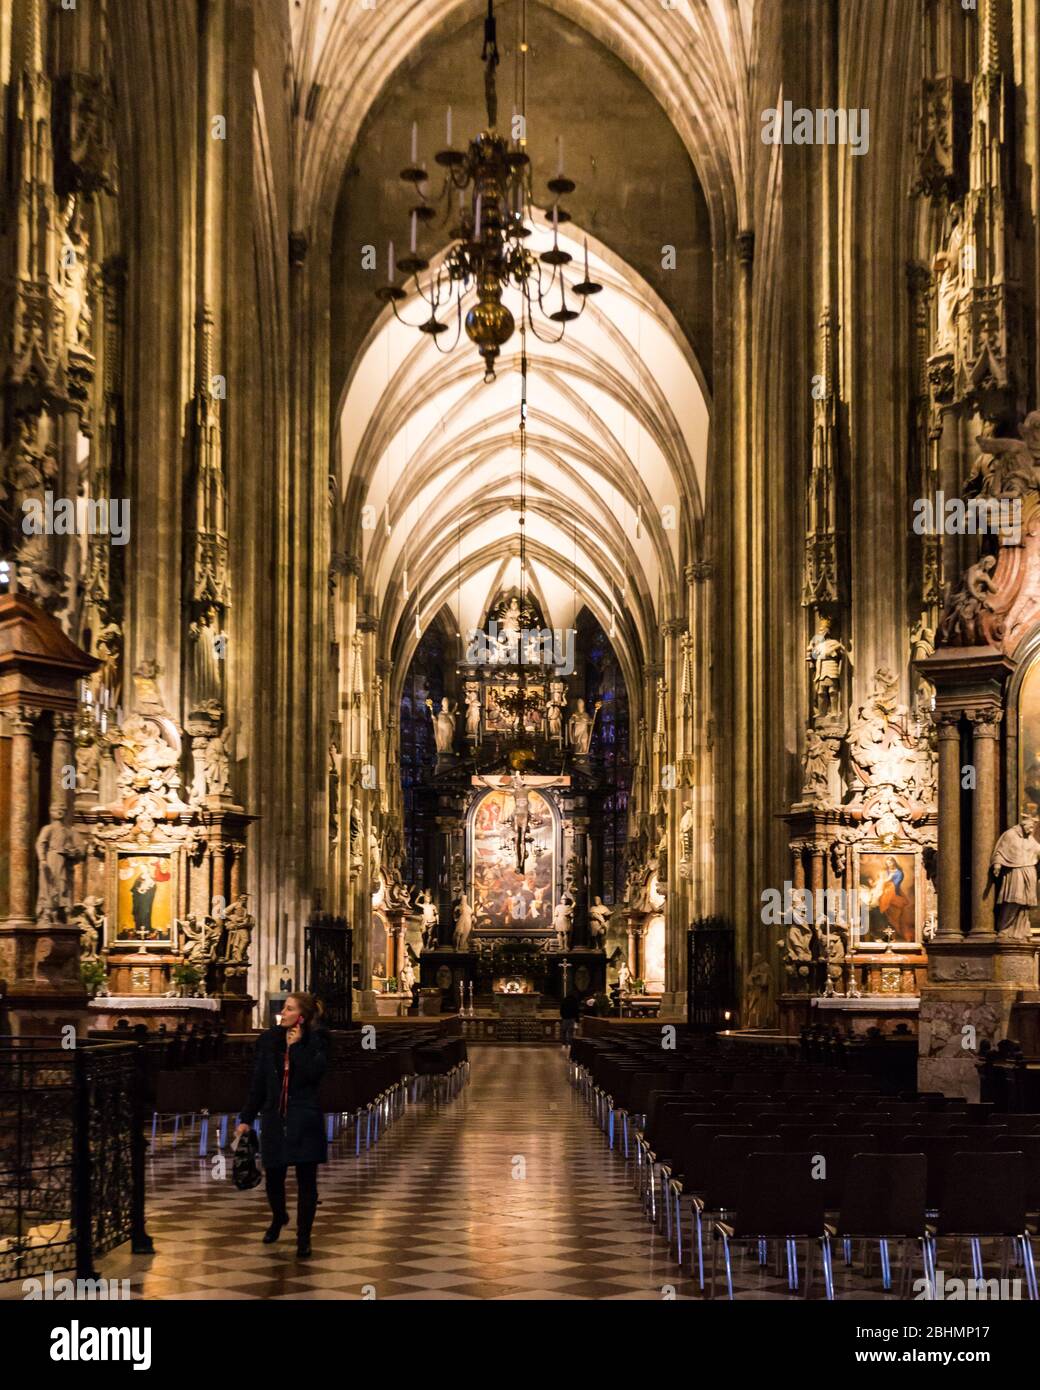 La magnifica Cattedrale di Santo Stefano a Vienna. Risalente al 1137, è un capolavoro architettonico del Medioevo. Foto Stock